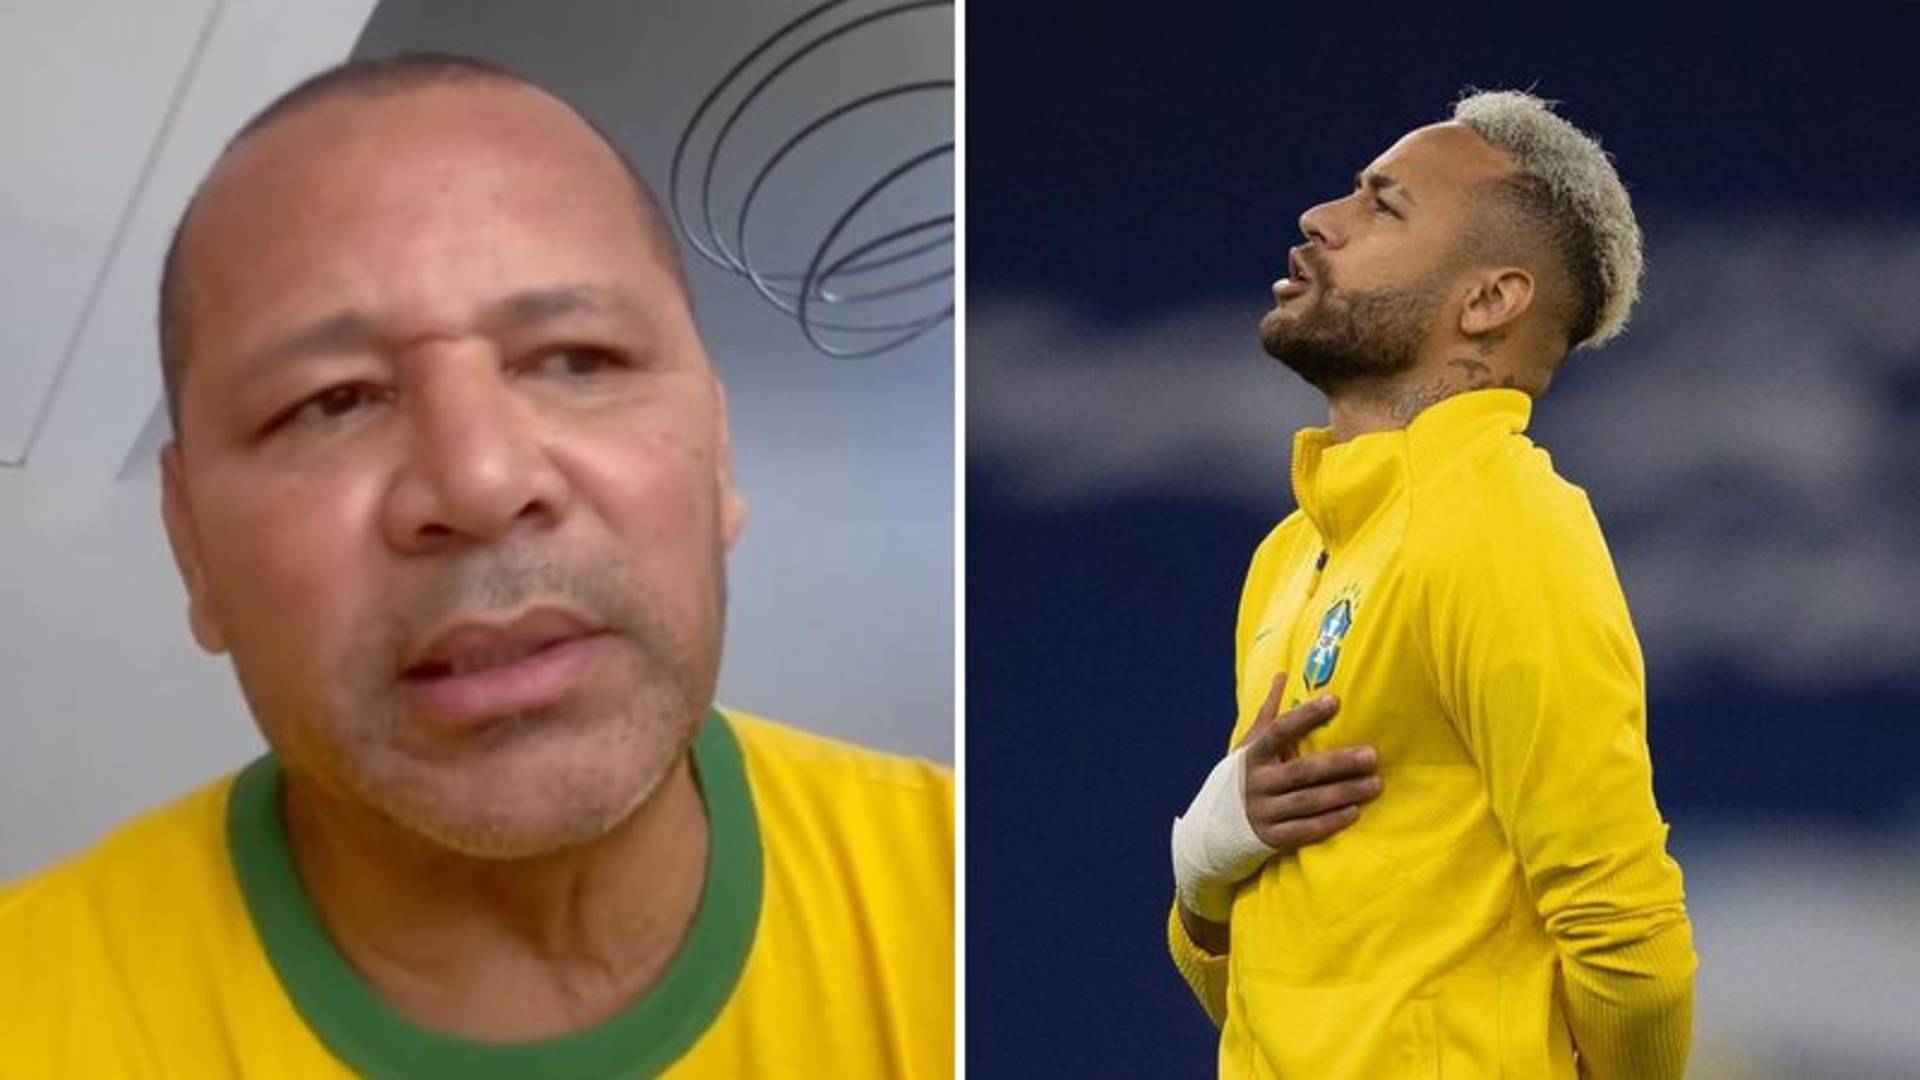 Na estreia do Brasil na Copa, pai de Neymar manda recado para o filho: “Nada será fácil” - Metropolitana FM